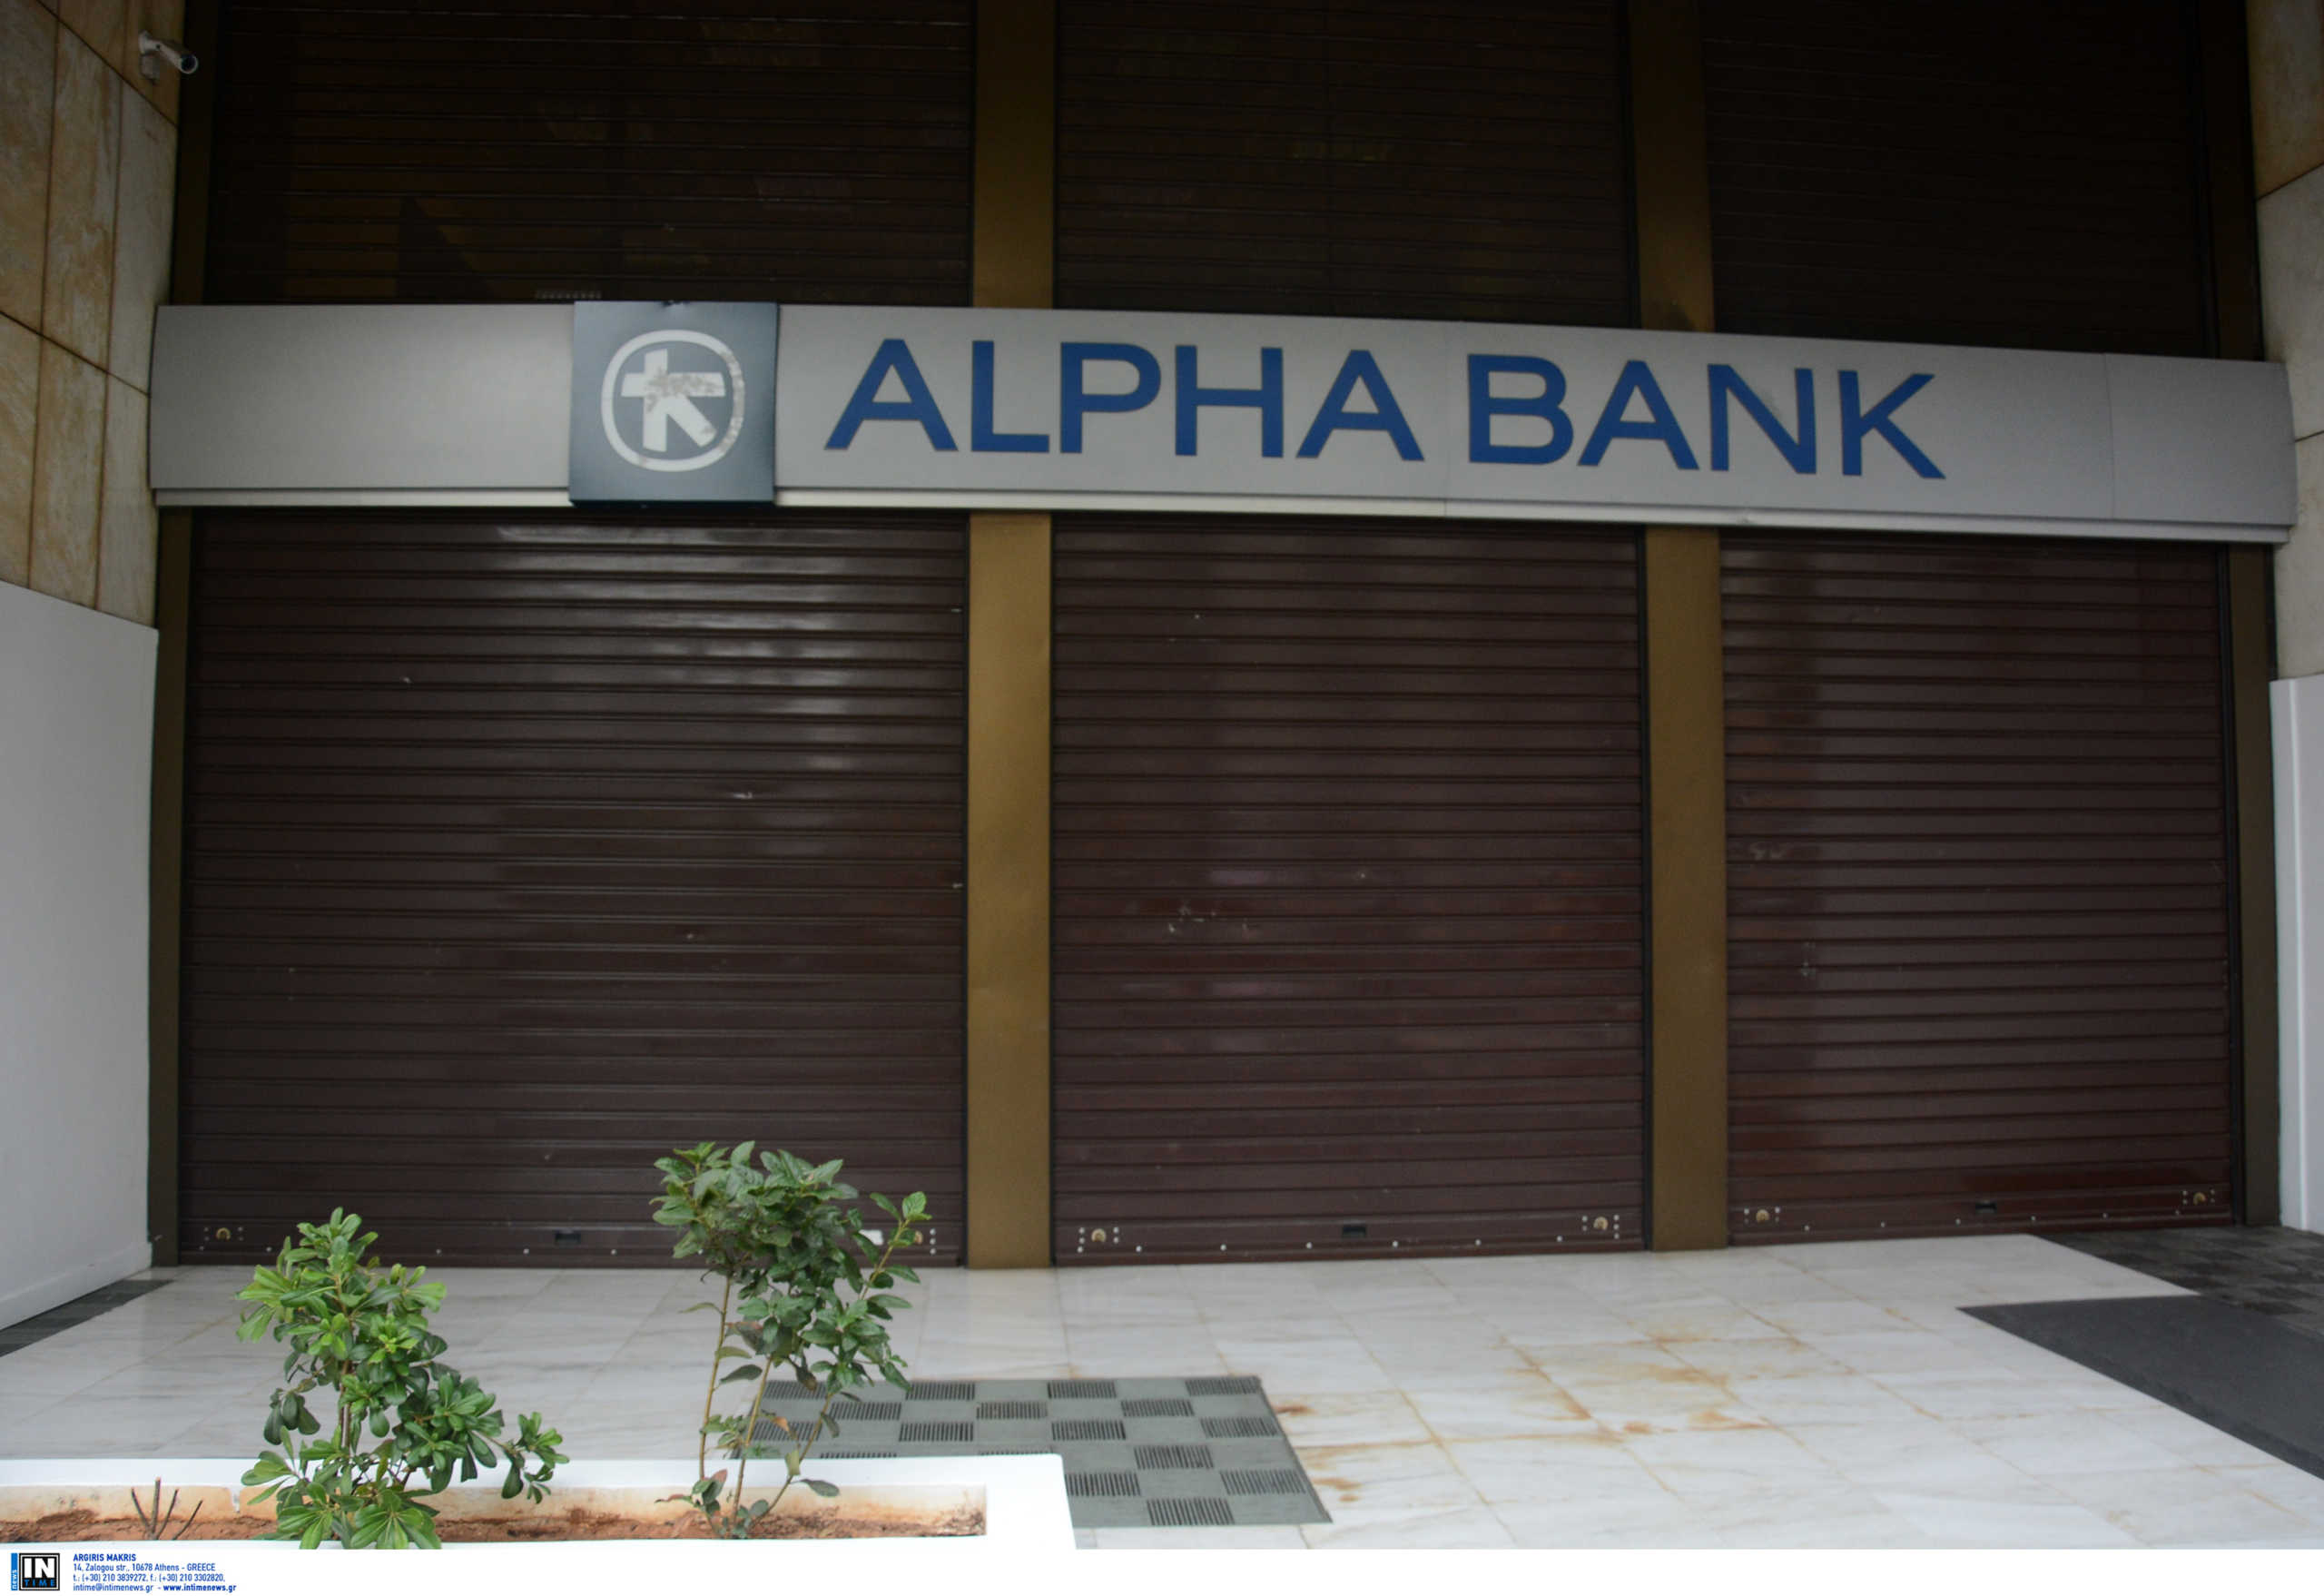 Με bonus και πλήρη αναγνώριση δικαιωμάτων η μεταφορά 700 εργαζομένων στην Alpha Bank στην θυγατρική Cepal